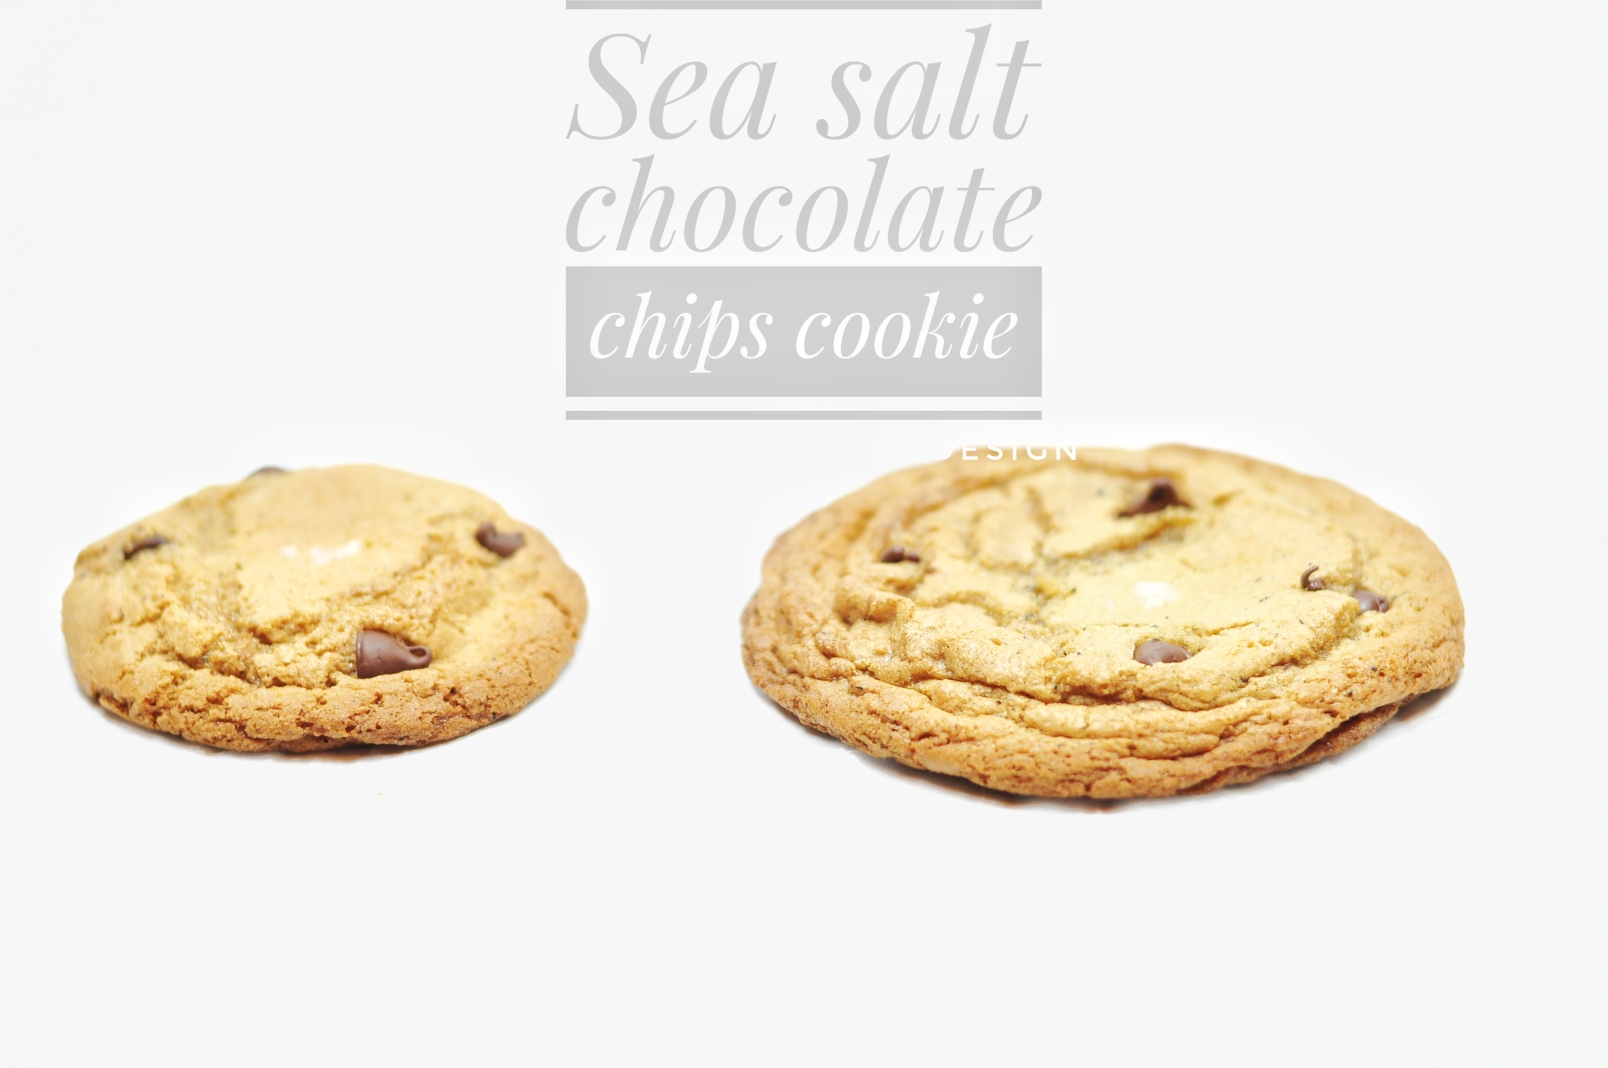 超级正宗的美式巧克力软曲奇Chocolate chips cookie,chewy 醇香美味，入口既化之感,零难度